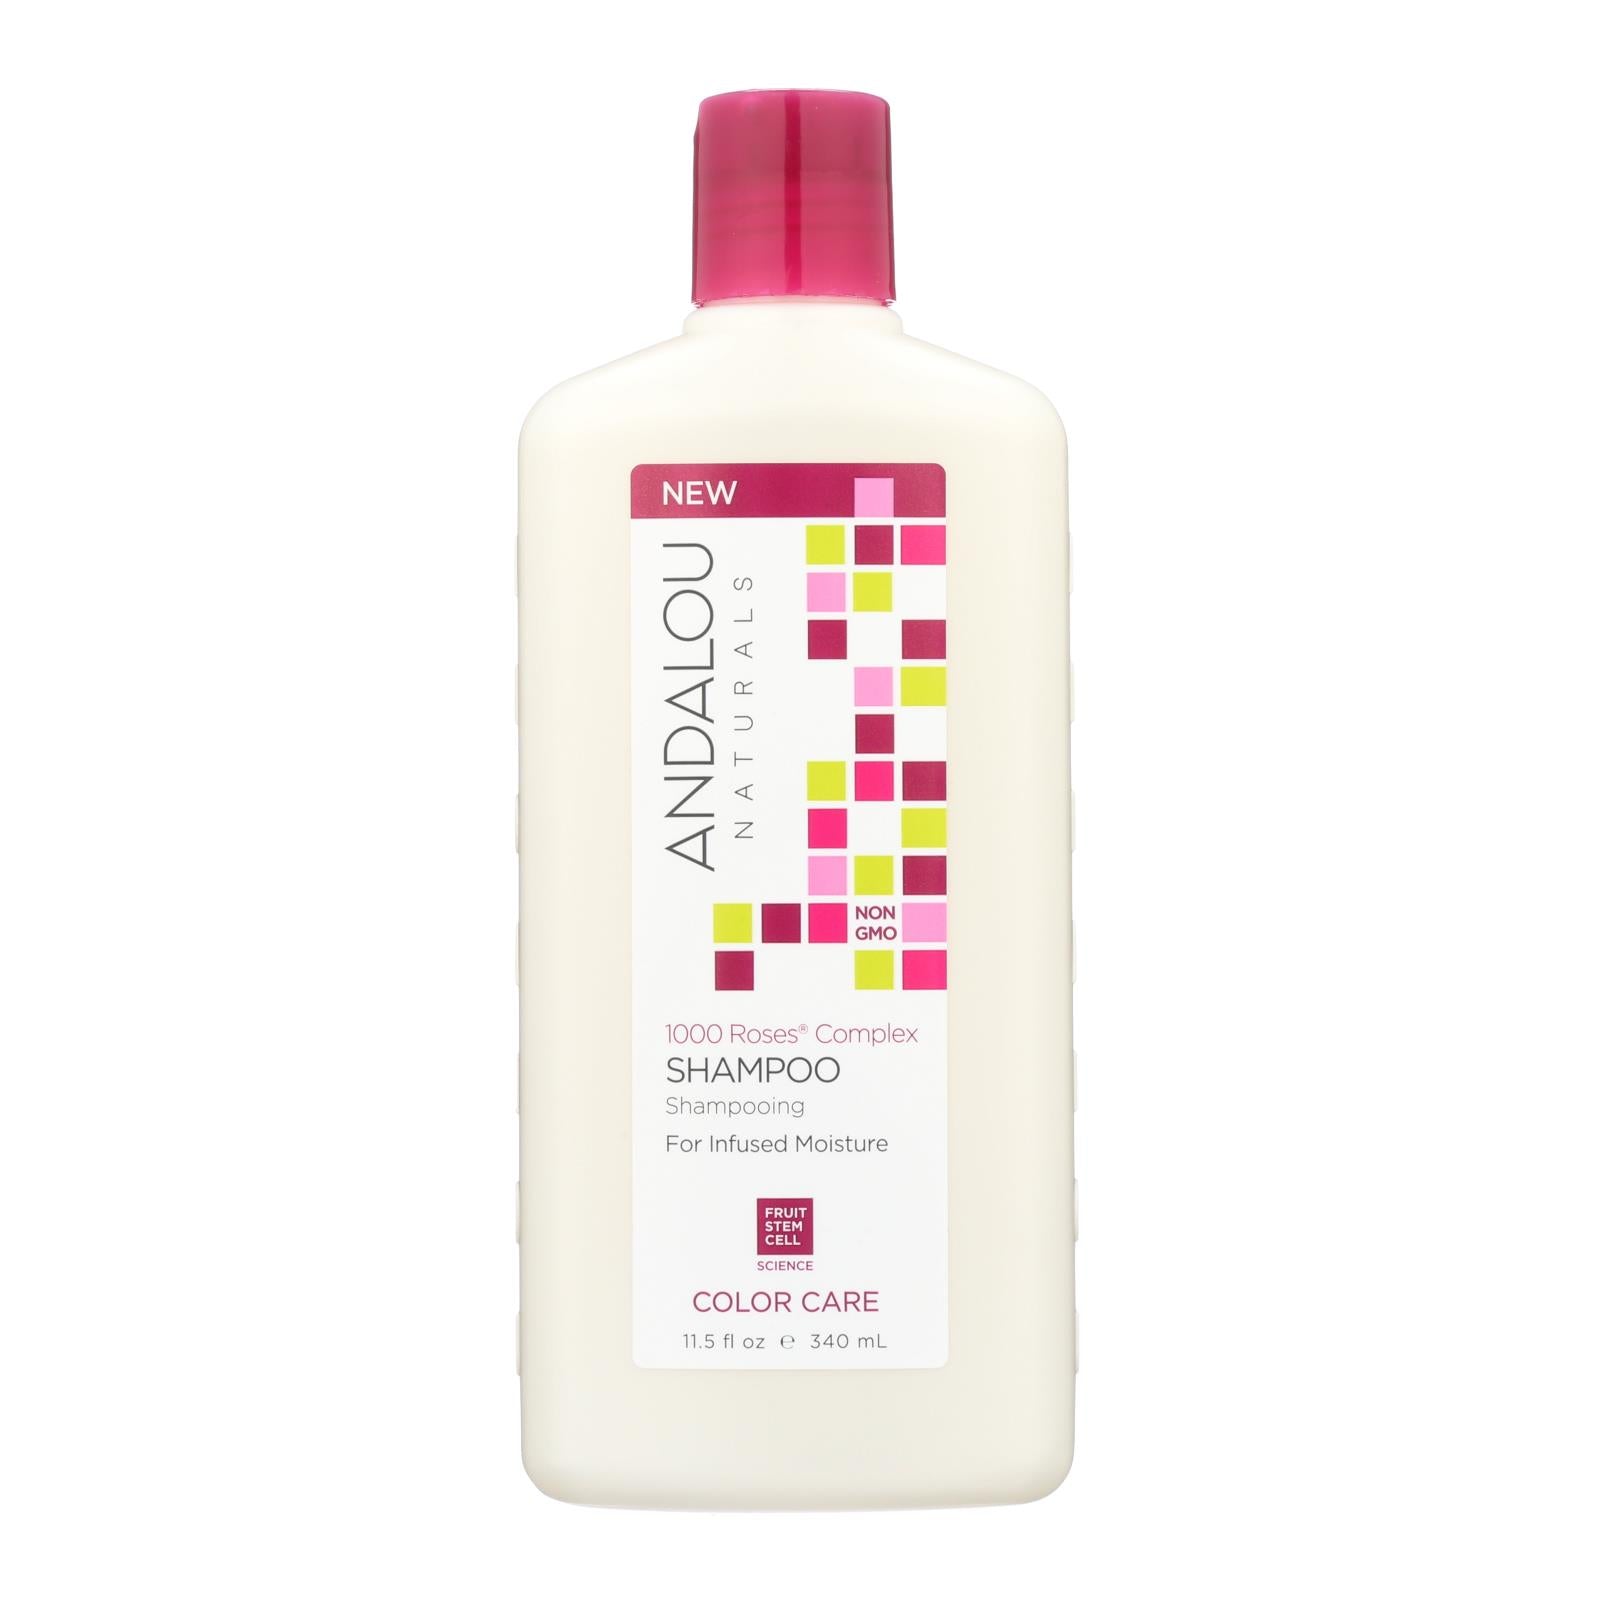 Andalou Naturals Color Care Shampoo -1000 Roses Complex - 11.5 Fl Oz